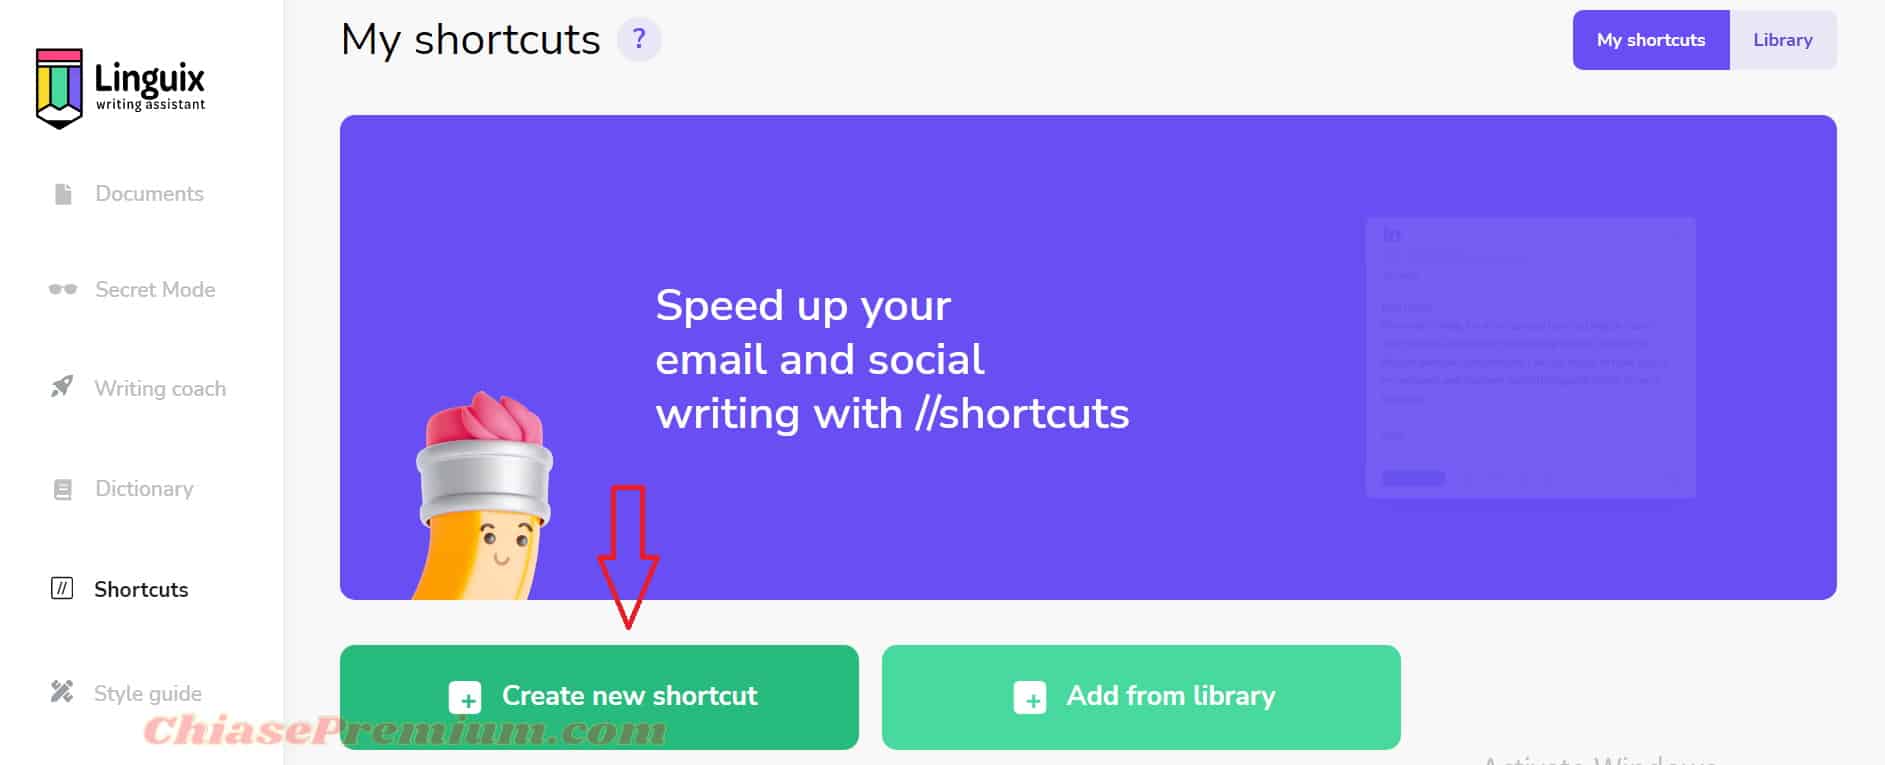 Bạn click chuột vào "Creat new shortcut" để tạo một bản lưu cho mình